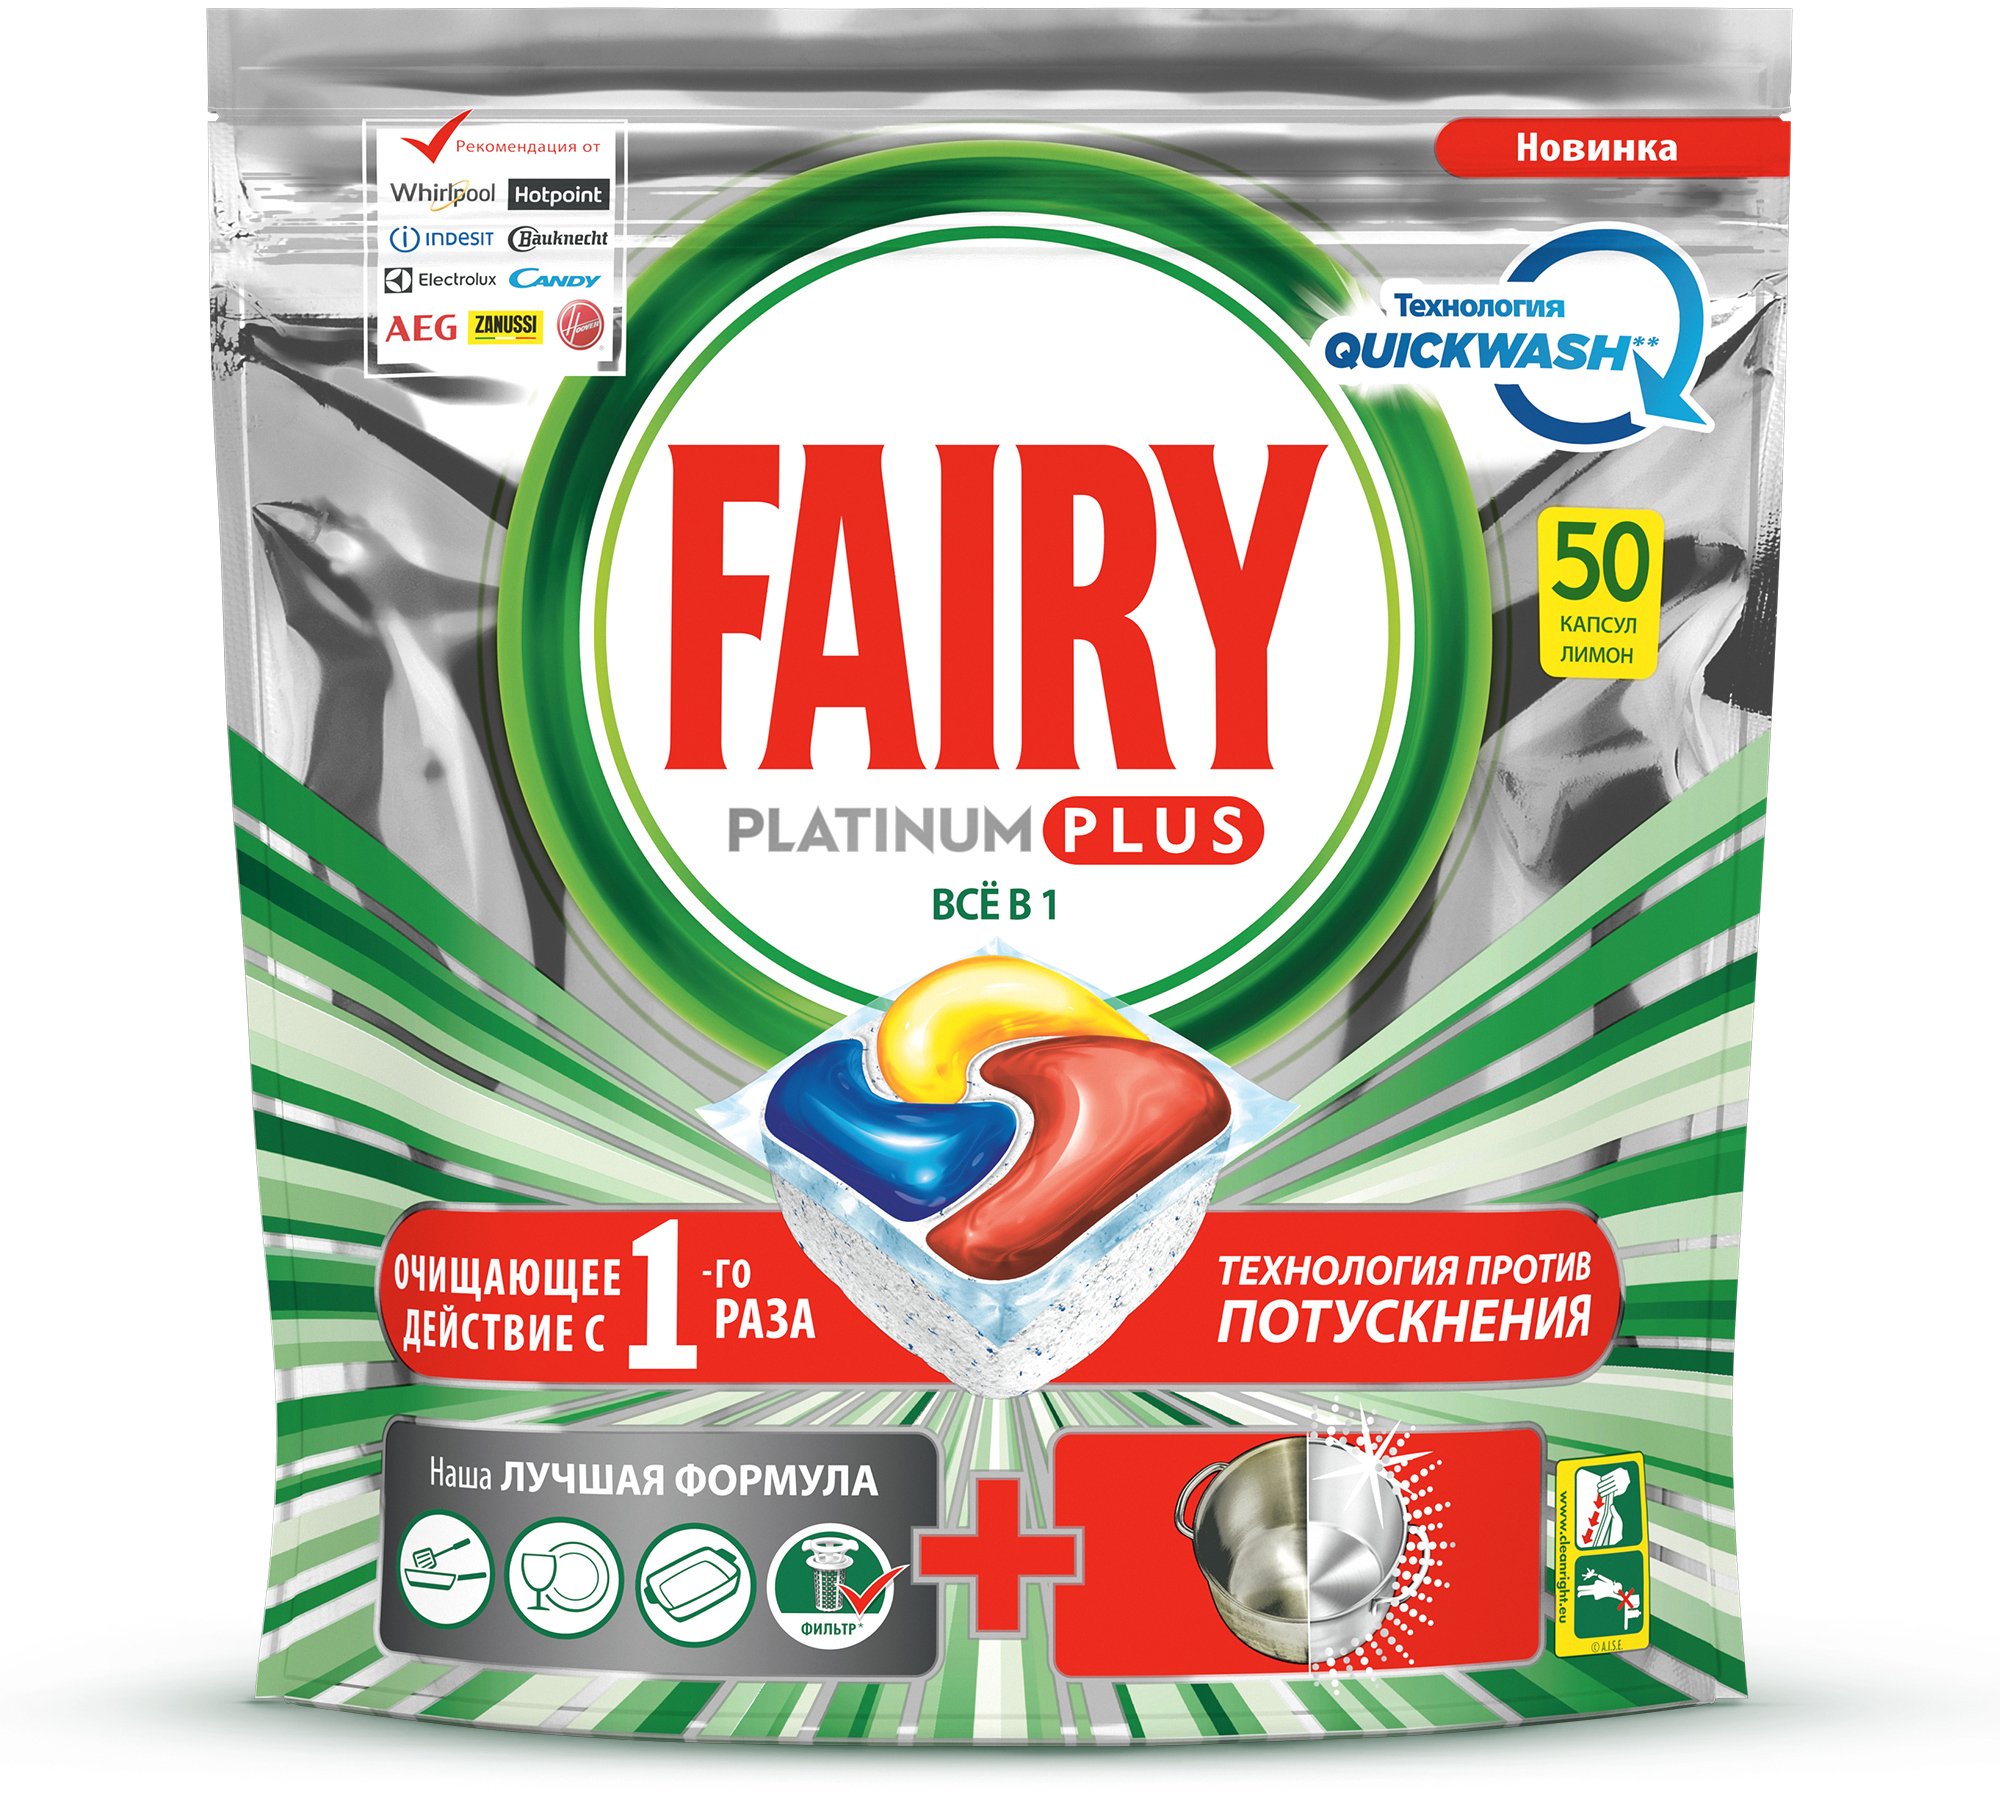 Таблетки для посудомоечной машины Fairy Все-в-Одном Platinum Plus Лимон, 50 шт. - фото 2